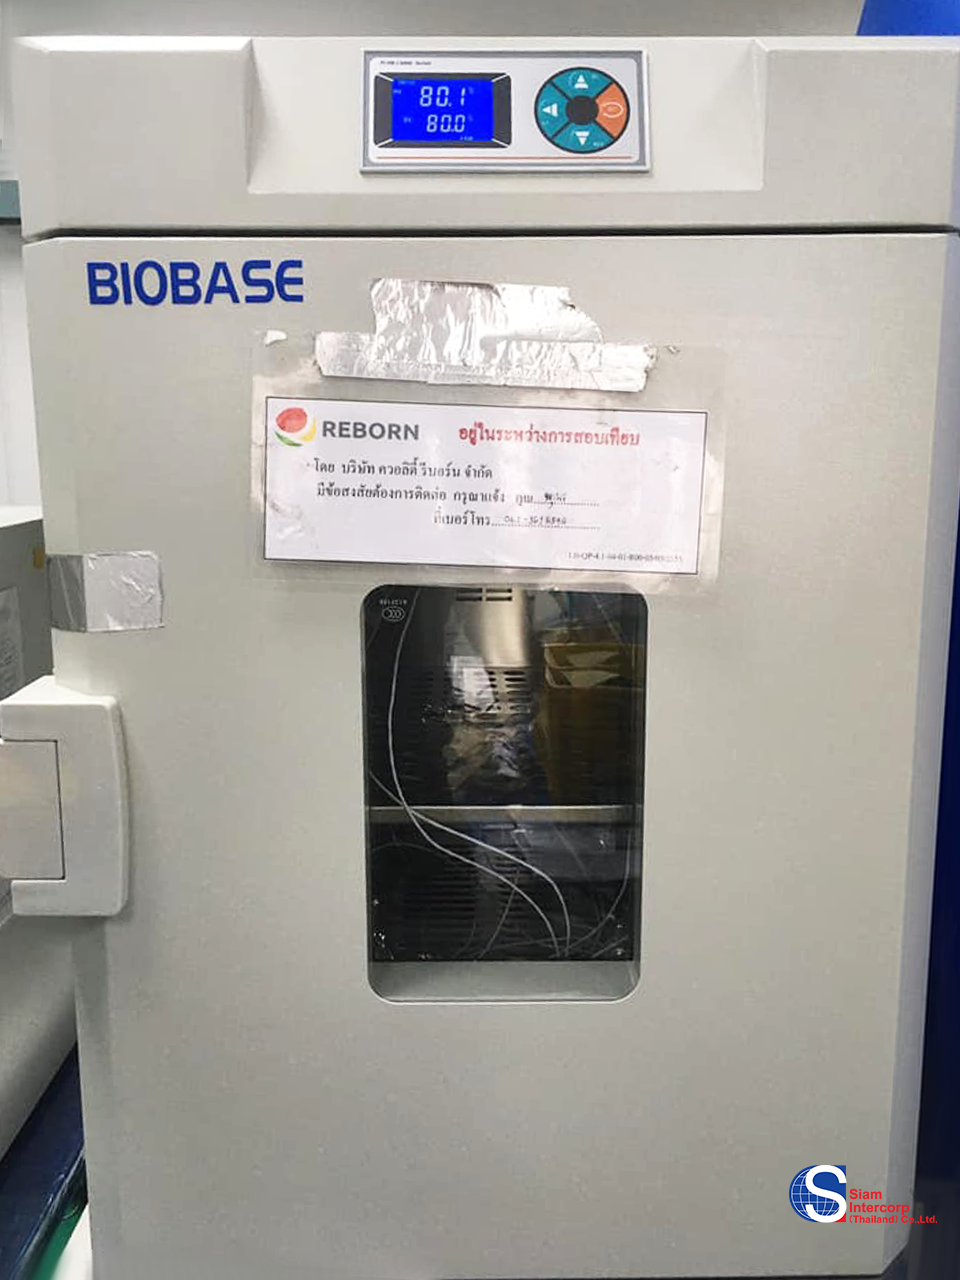 ติดตั้งตู้อบลมร้อน (Forced Air Oven) ยี่ห้อ Biobase พื้นที่จังหวัด ปทุมธานี